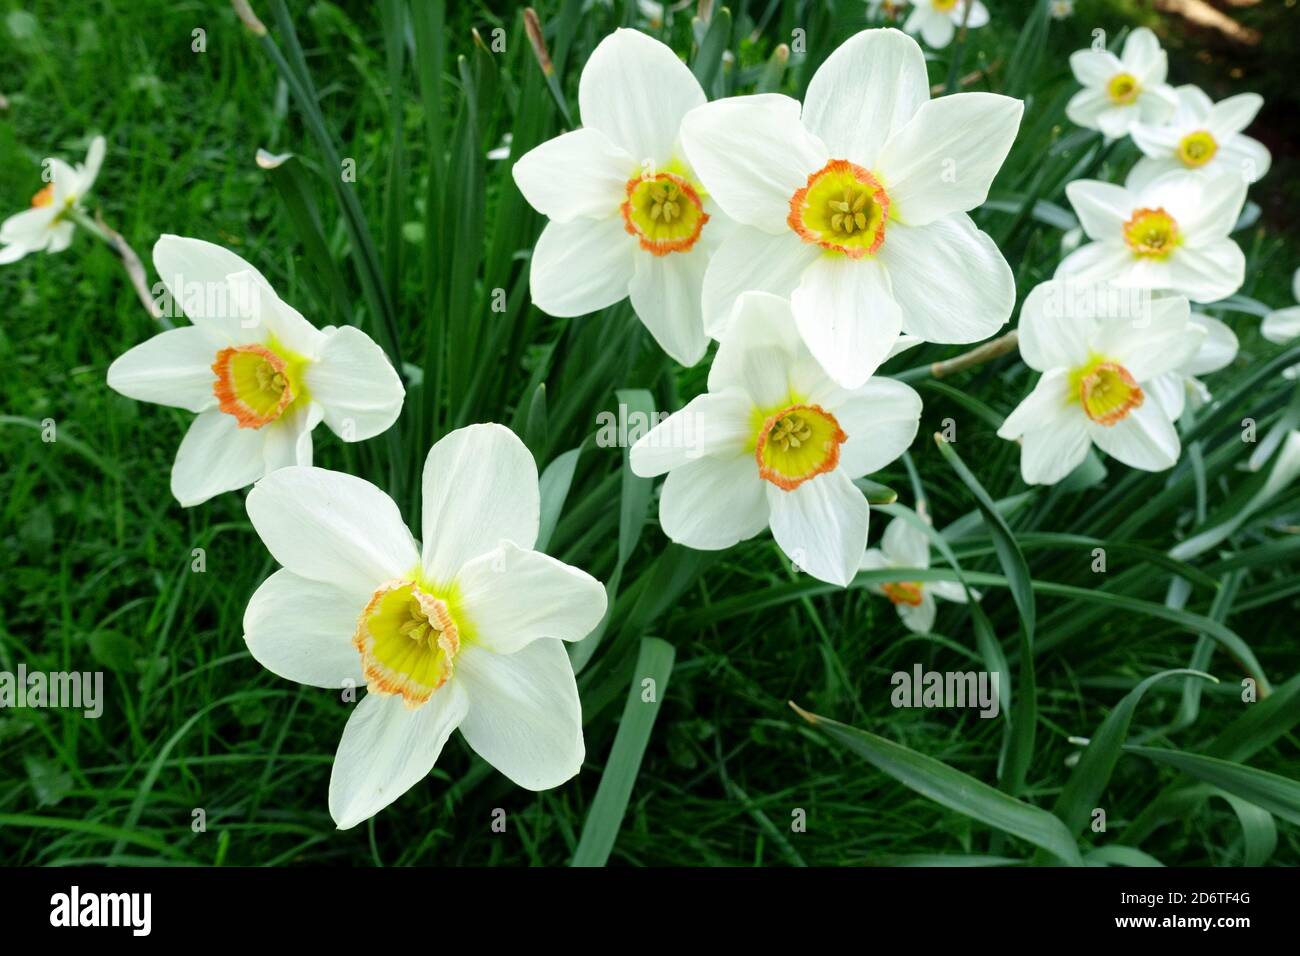 Frühling Garten Grenze Blumen Narzissen White Narcissus 'Geranium' Stockfoto